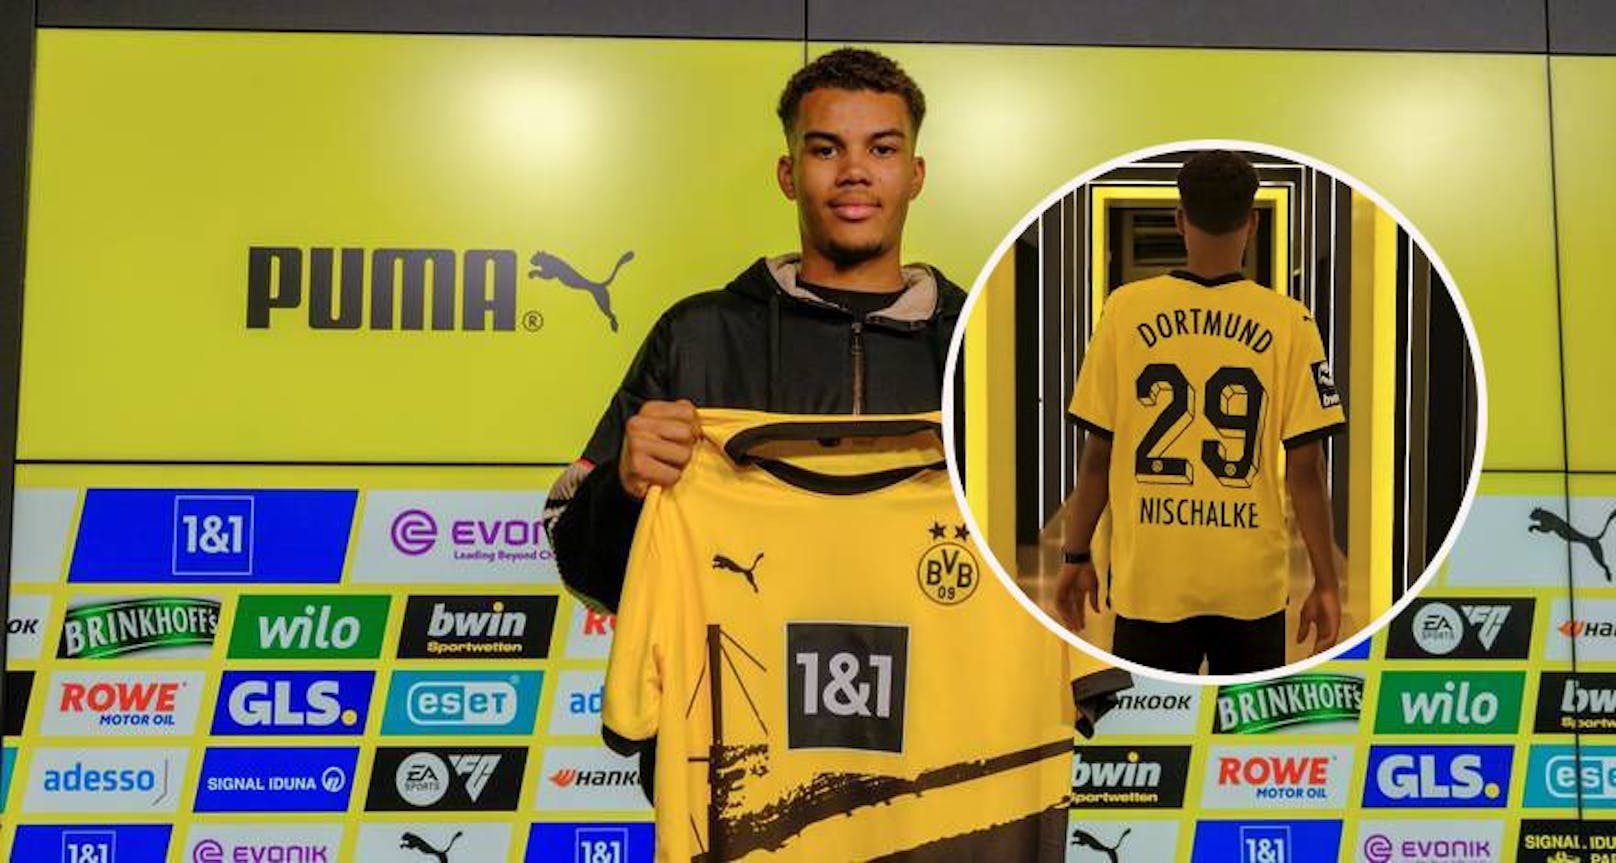 Kein Witz! Dortmund nimmt Nischalke unter Vertrag